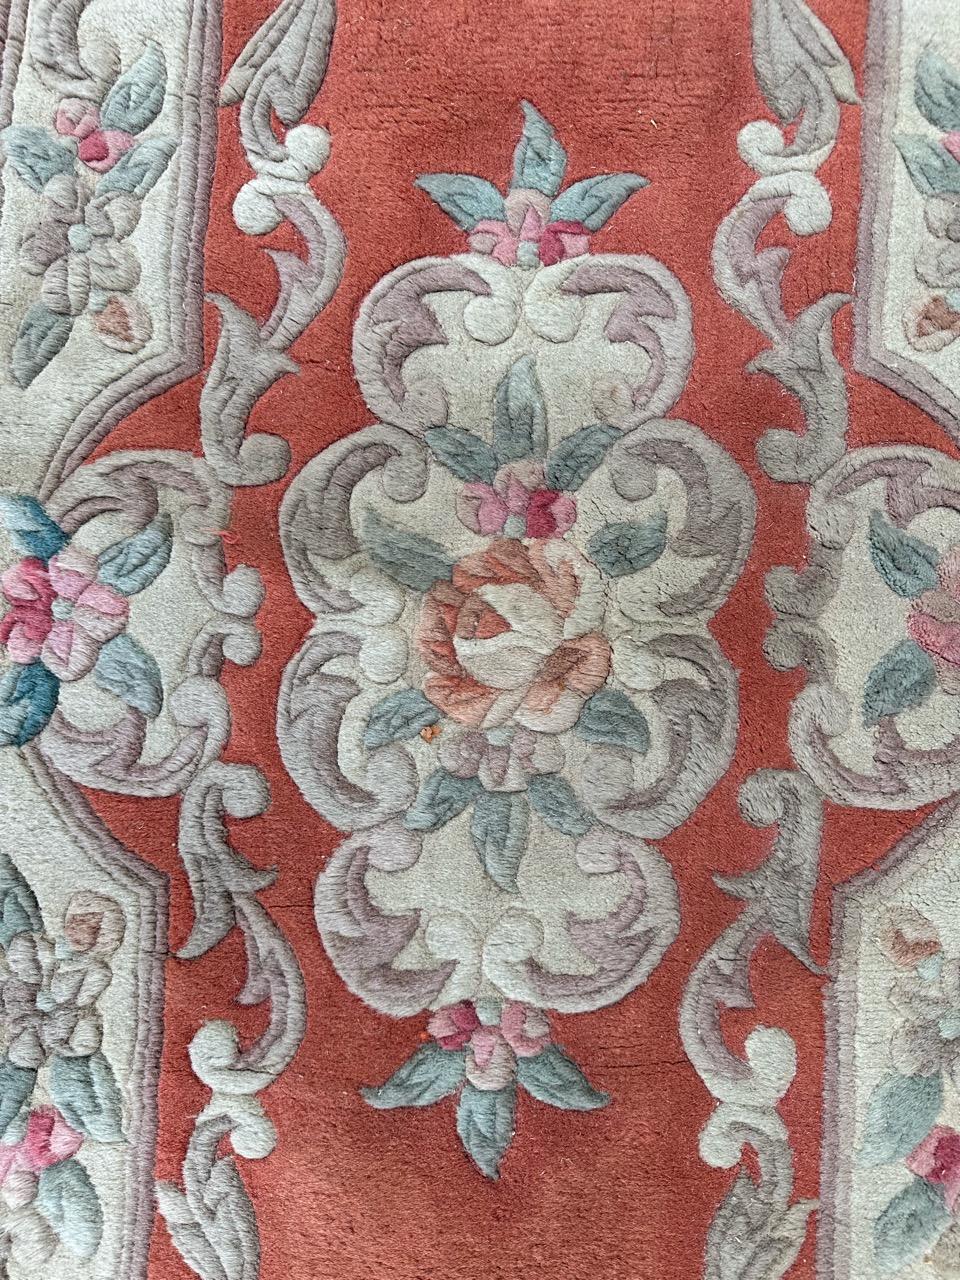 Schöner chinesischer Teppich aus der Mitte des Jahrhunderts mit schönem einfachem und floralem Muster mit einer schönen orangefarbenen Feldfarbe, vollständig handgeknüpft mit Wolle auf Baumwollbasis.

✨✨✨
